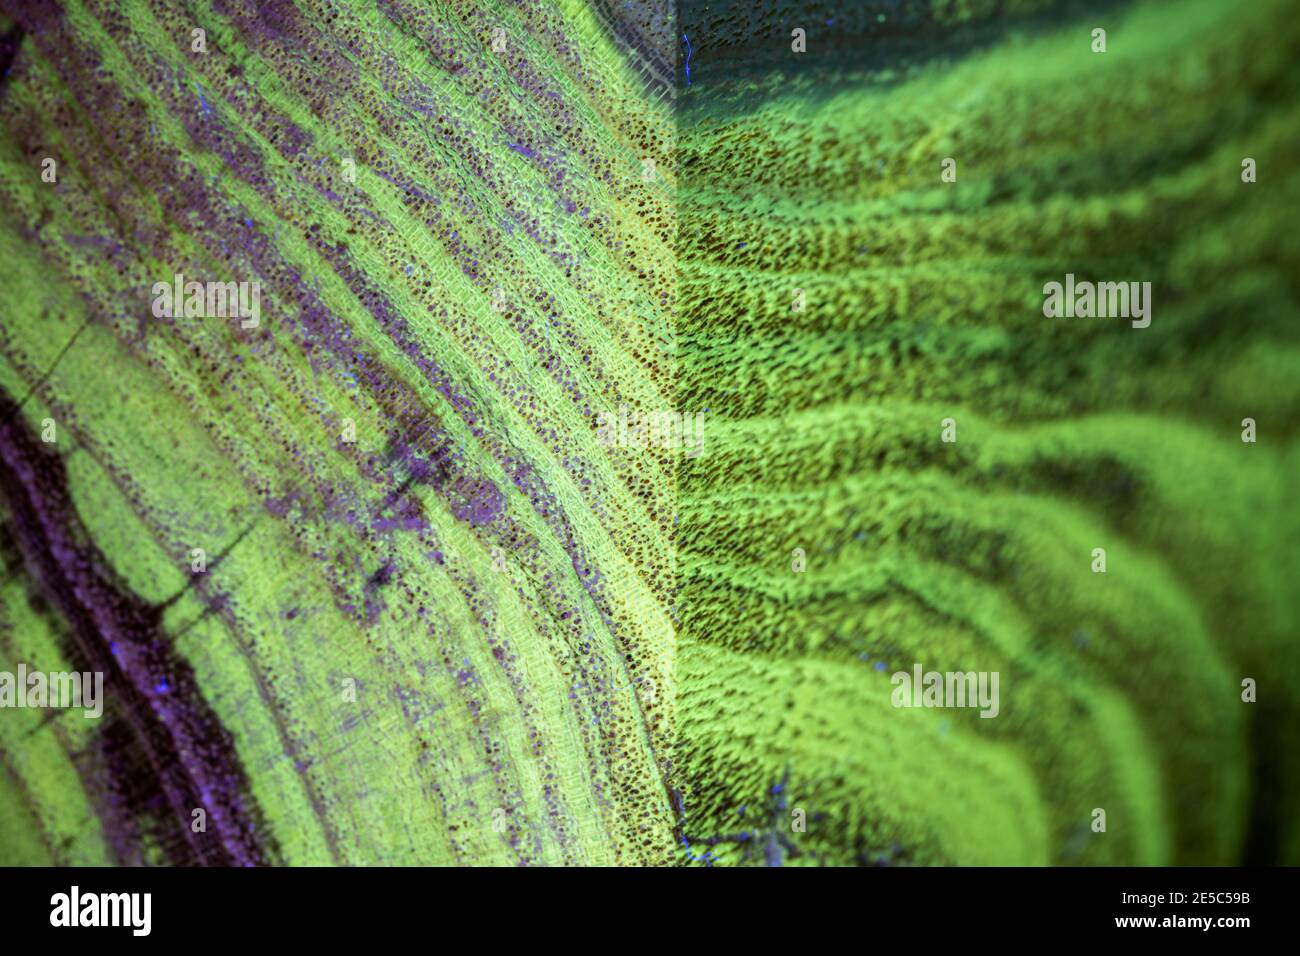 El grano de la madera negra de la langosta bajo la luz UV, mostrando la fluorescencia verde característica. Foto de stock